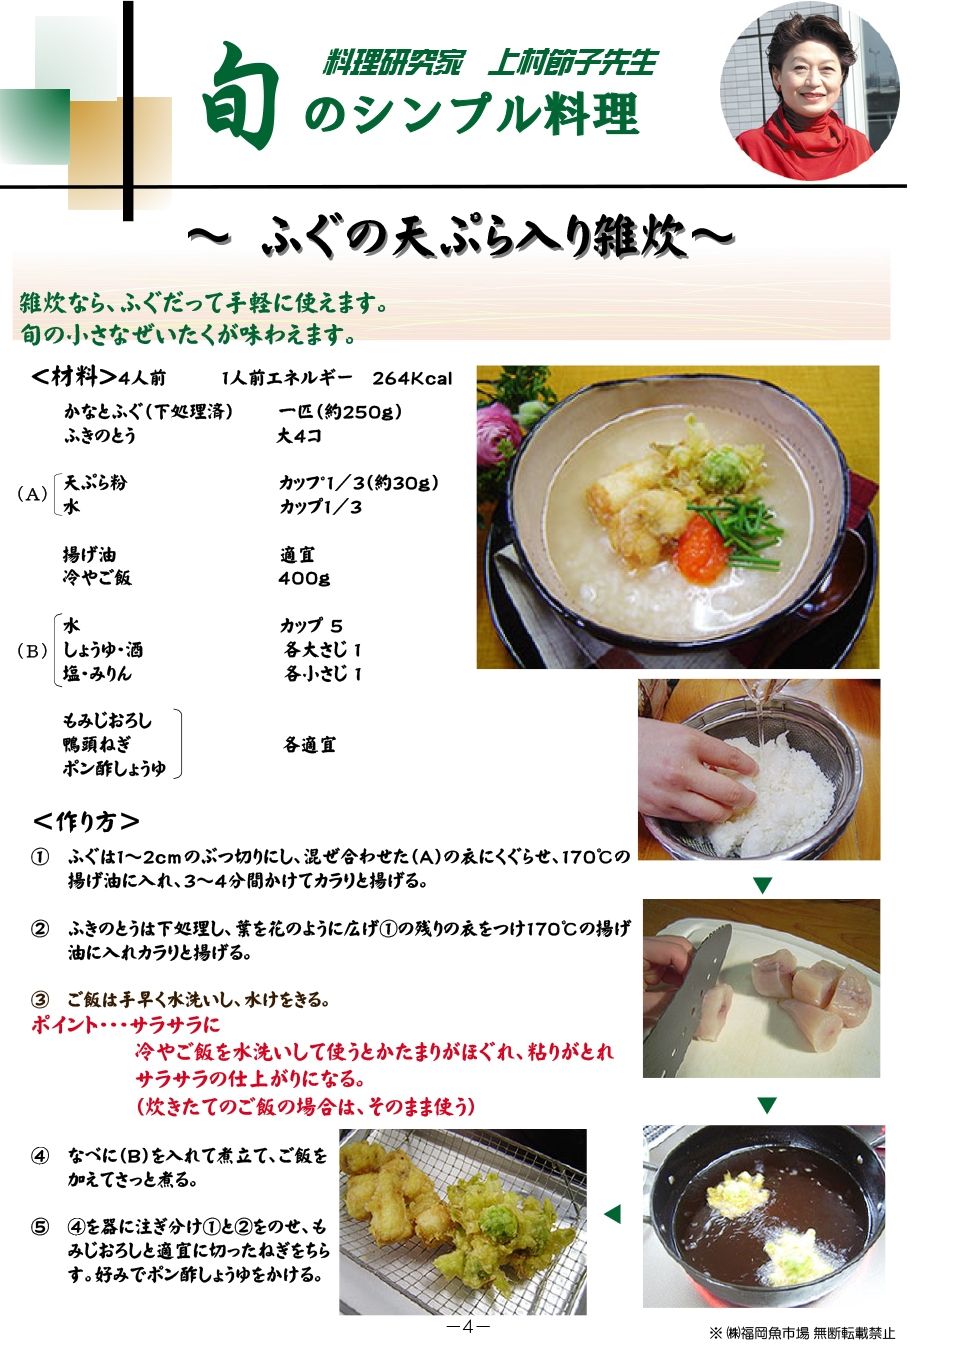 ふぐの天ぷら入り雑炊 旬のレシピ 福岡魚市場